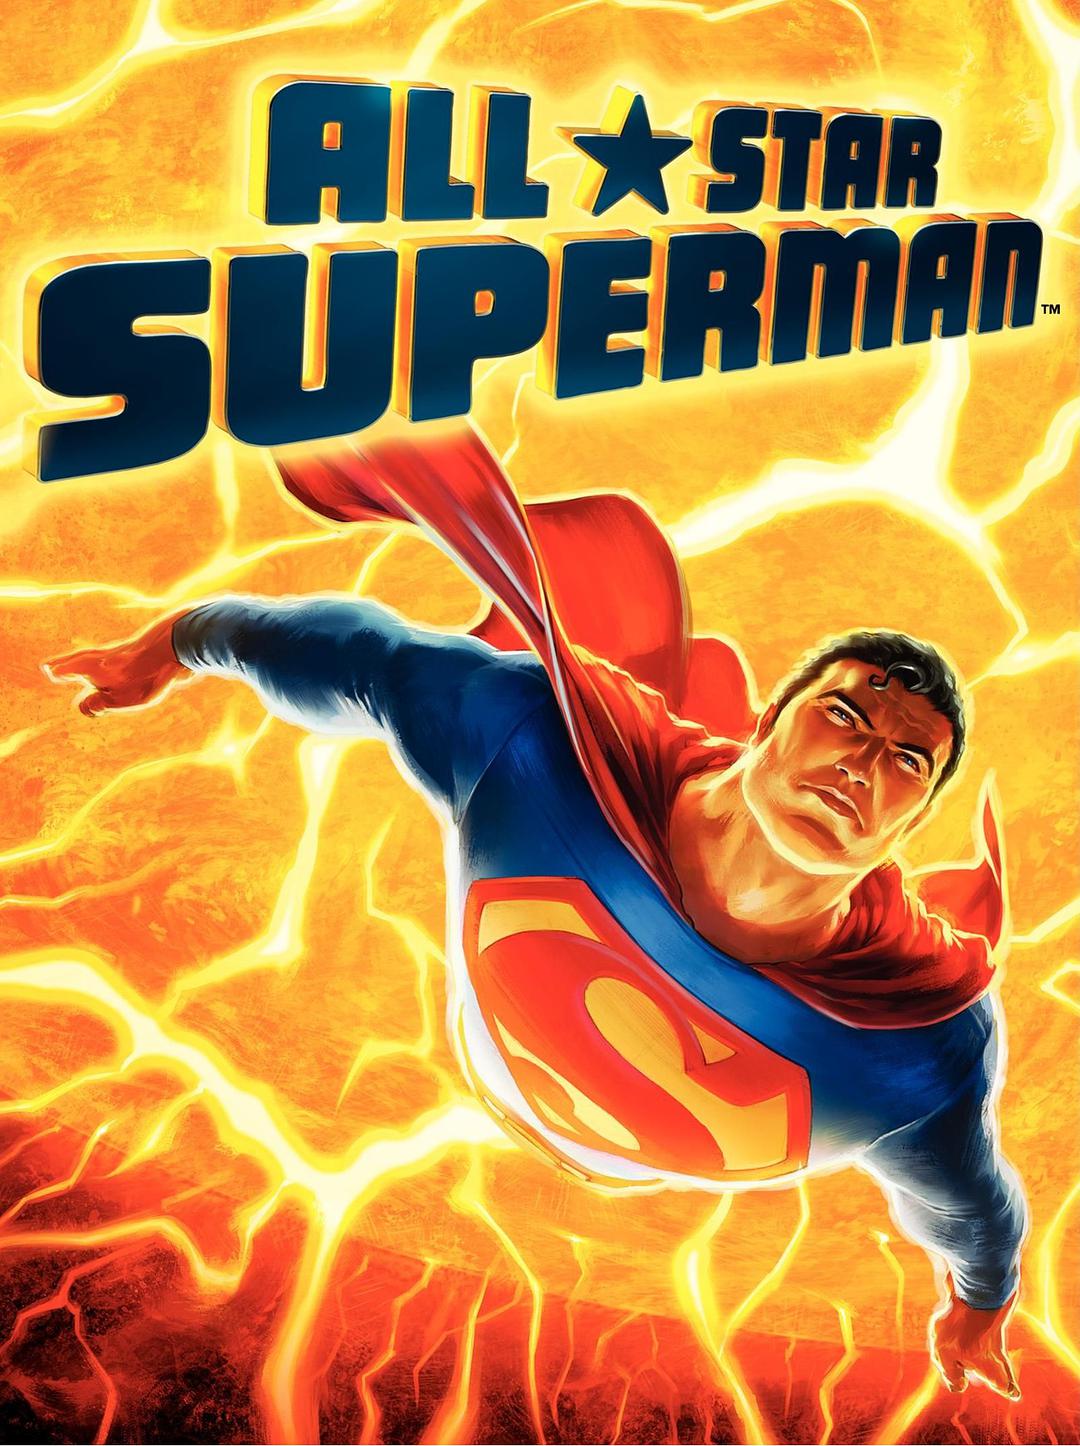 向上飞行的DC超人漫画图片 超级英雄电脑壁纸 - Like壁纸网